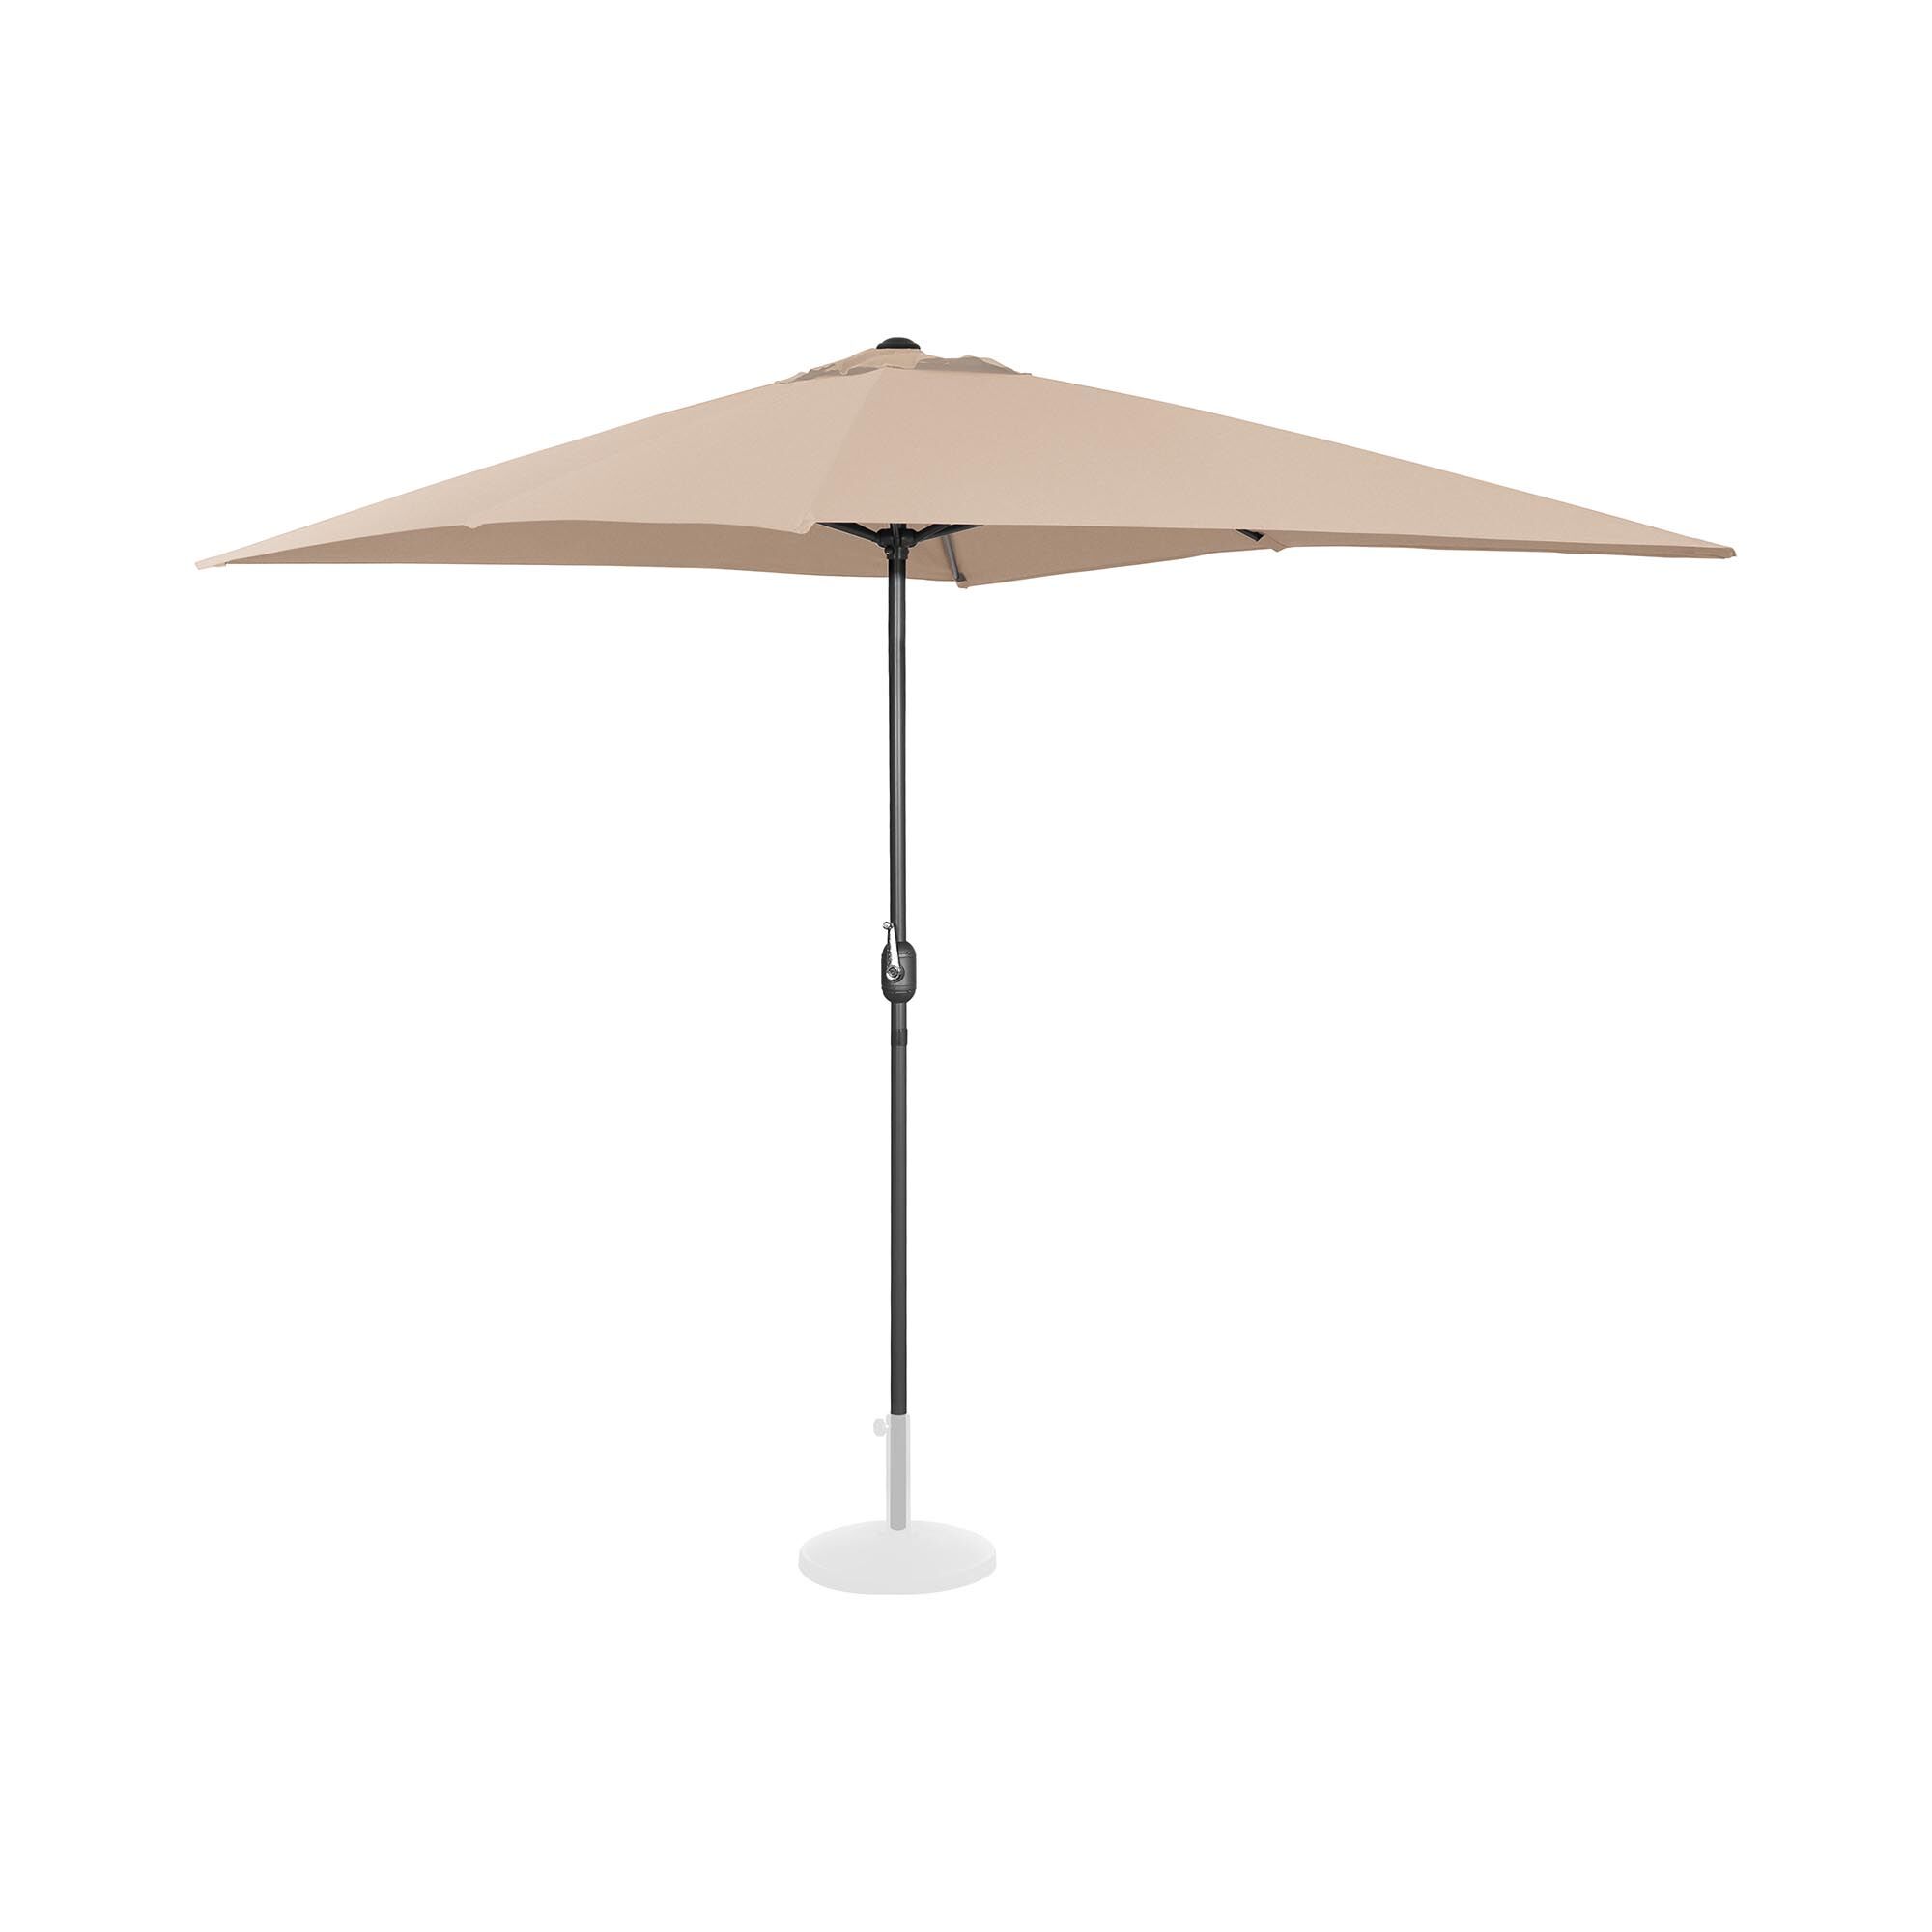 Uniprodo Large Outdoor Umbrella - creme - rectangular - 200 x 300 cm UNI_UMBRELLA_SQ2030CR